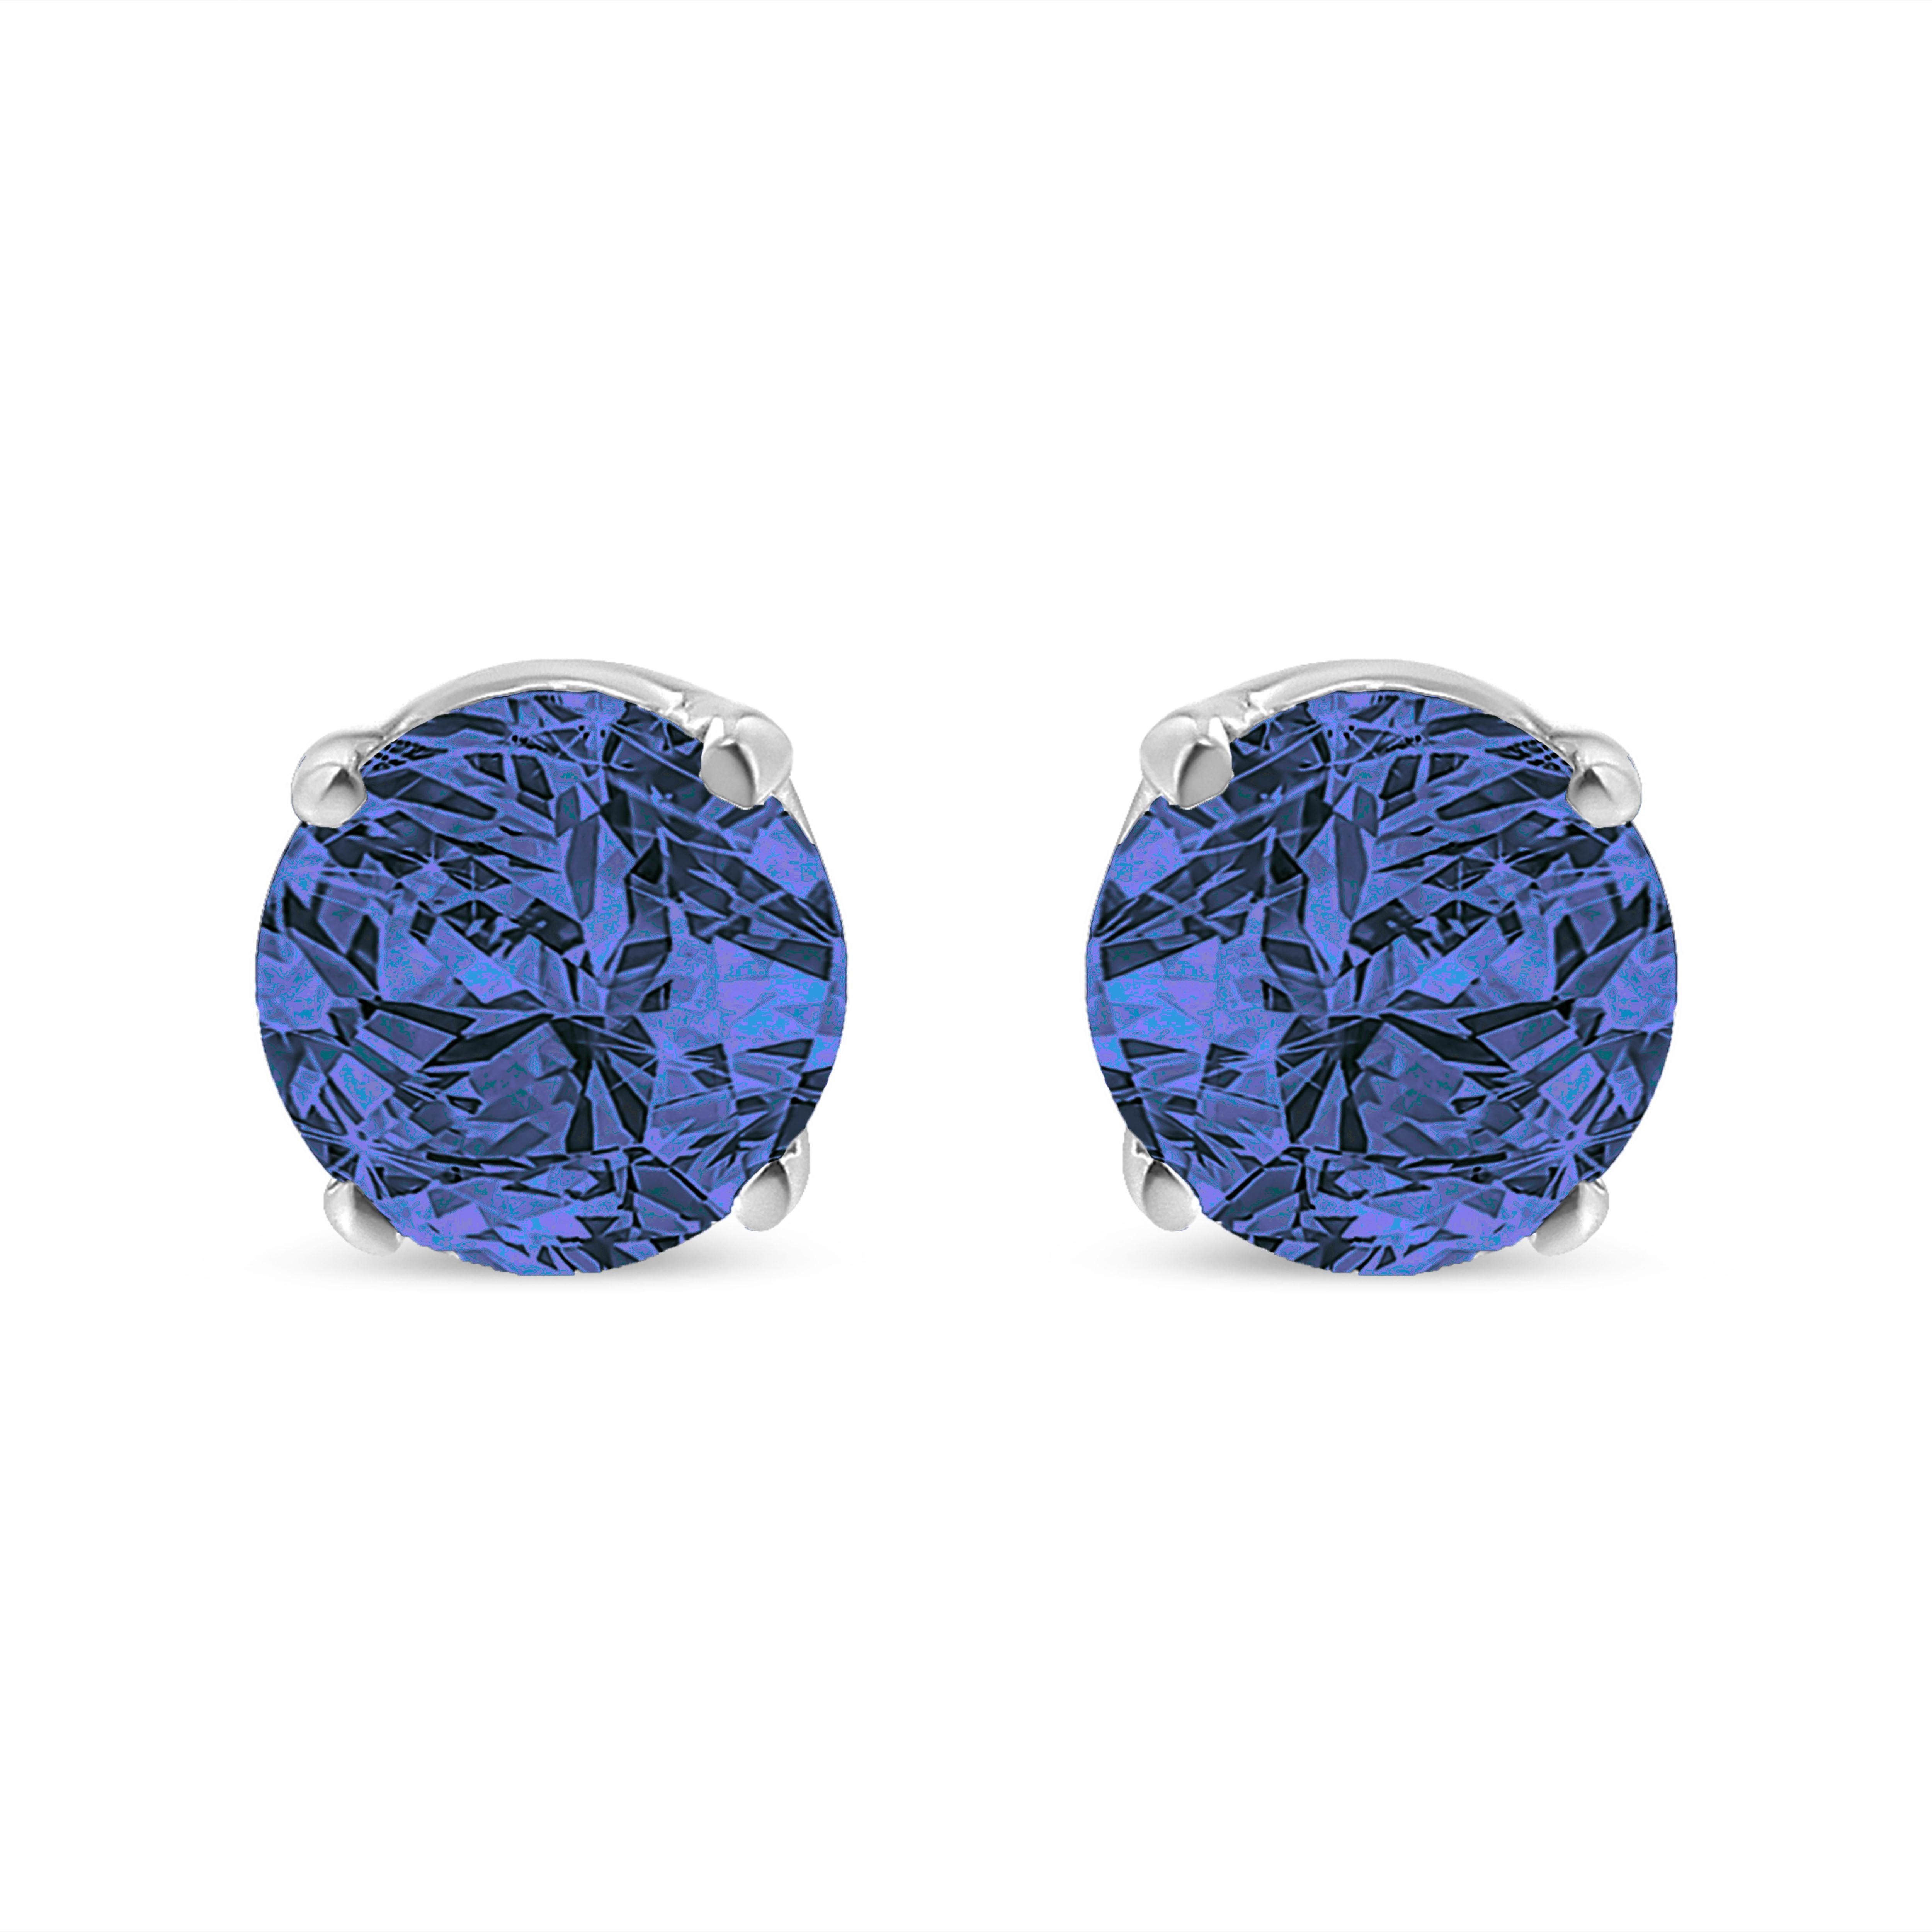 Diese Solitär-Ohrstecker in schlichtem und klassischem Design sind mit 1/7ct TDW Diamanten besetzt. Blaue, farbbehandelte, rund geschliffene Diamanten in einer Zackenfassung funkeln in diesem Design. Diese aus Sterlingsilber gefertigten Ohrstecker